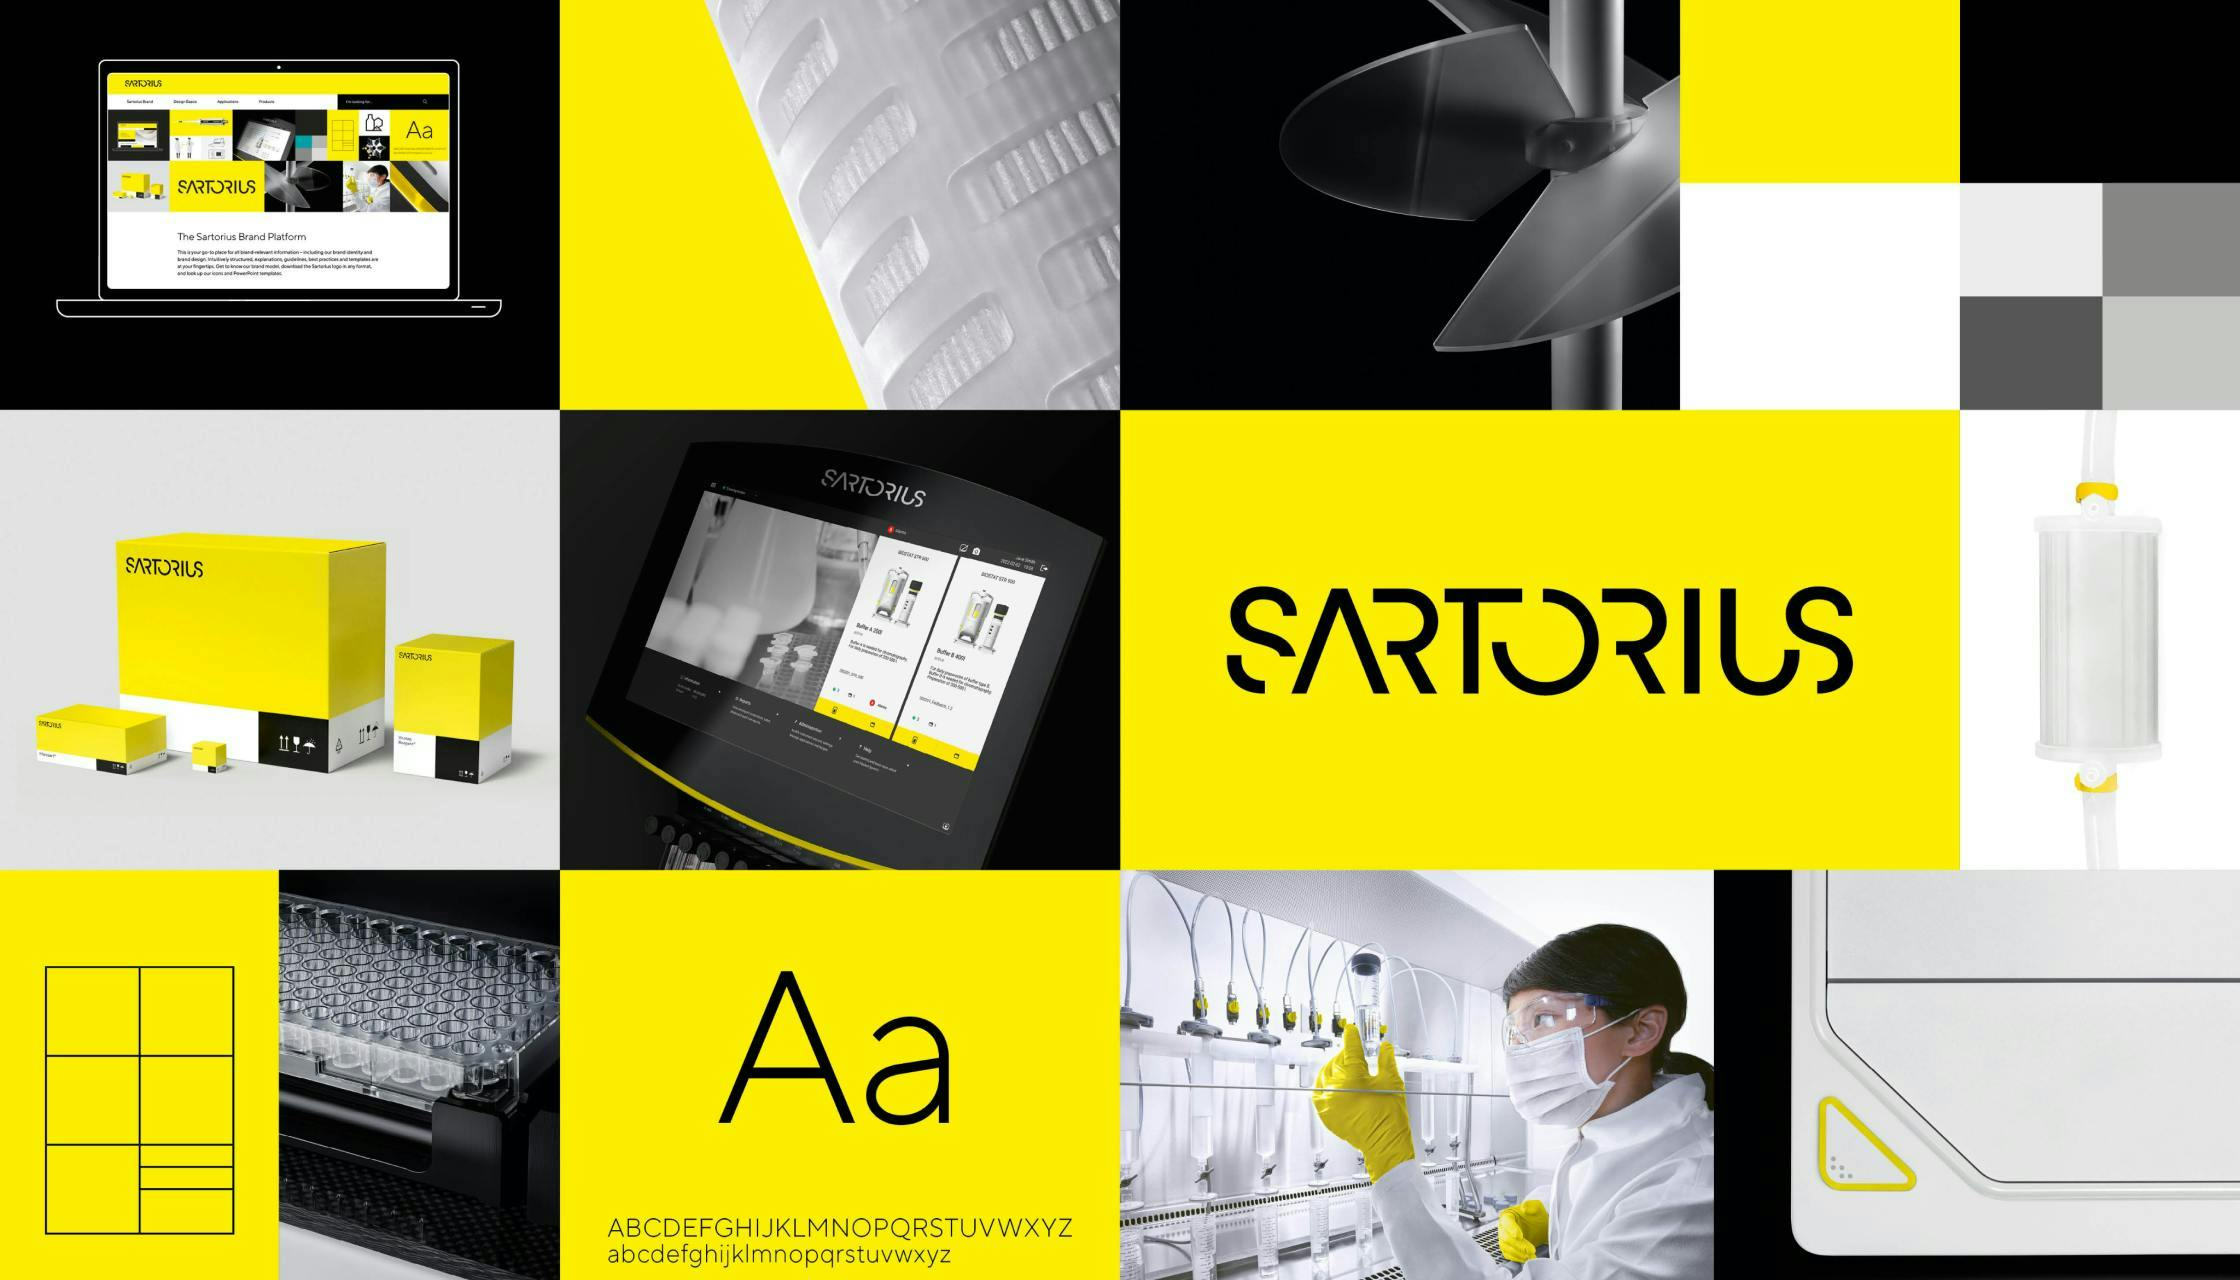 Sartorius Branding